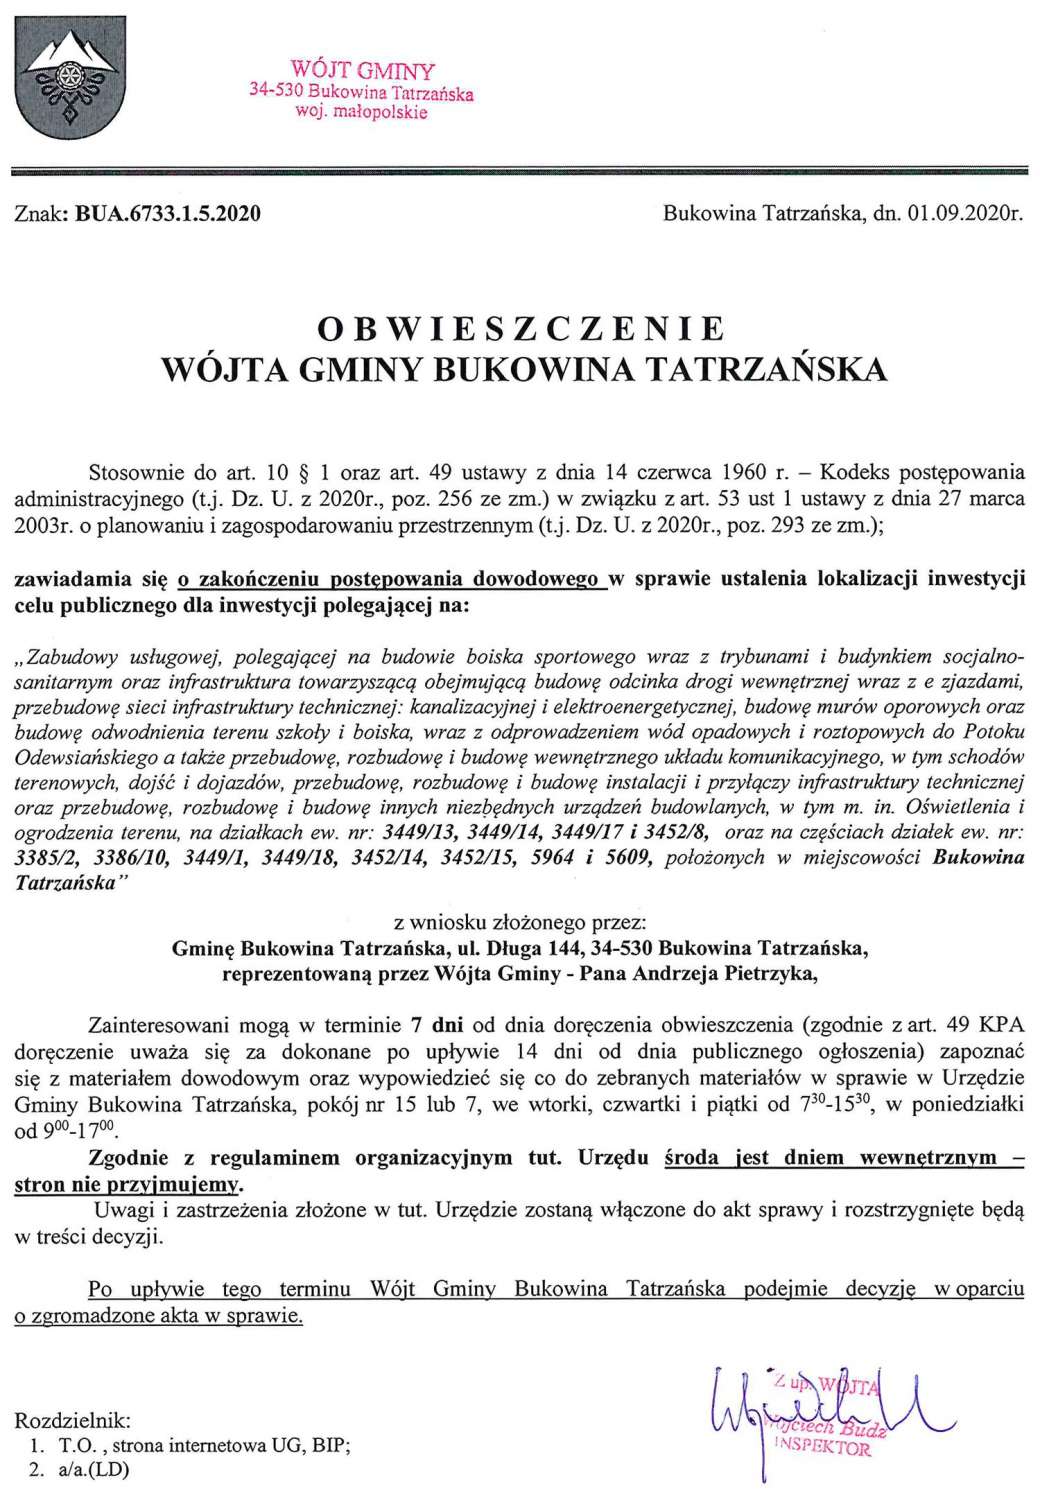 Obwieszczenie Wójta Gminy Bukowina Tatrzańska BUA 6733.1.5.2020